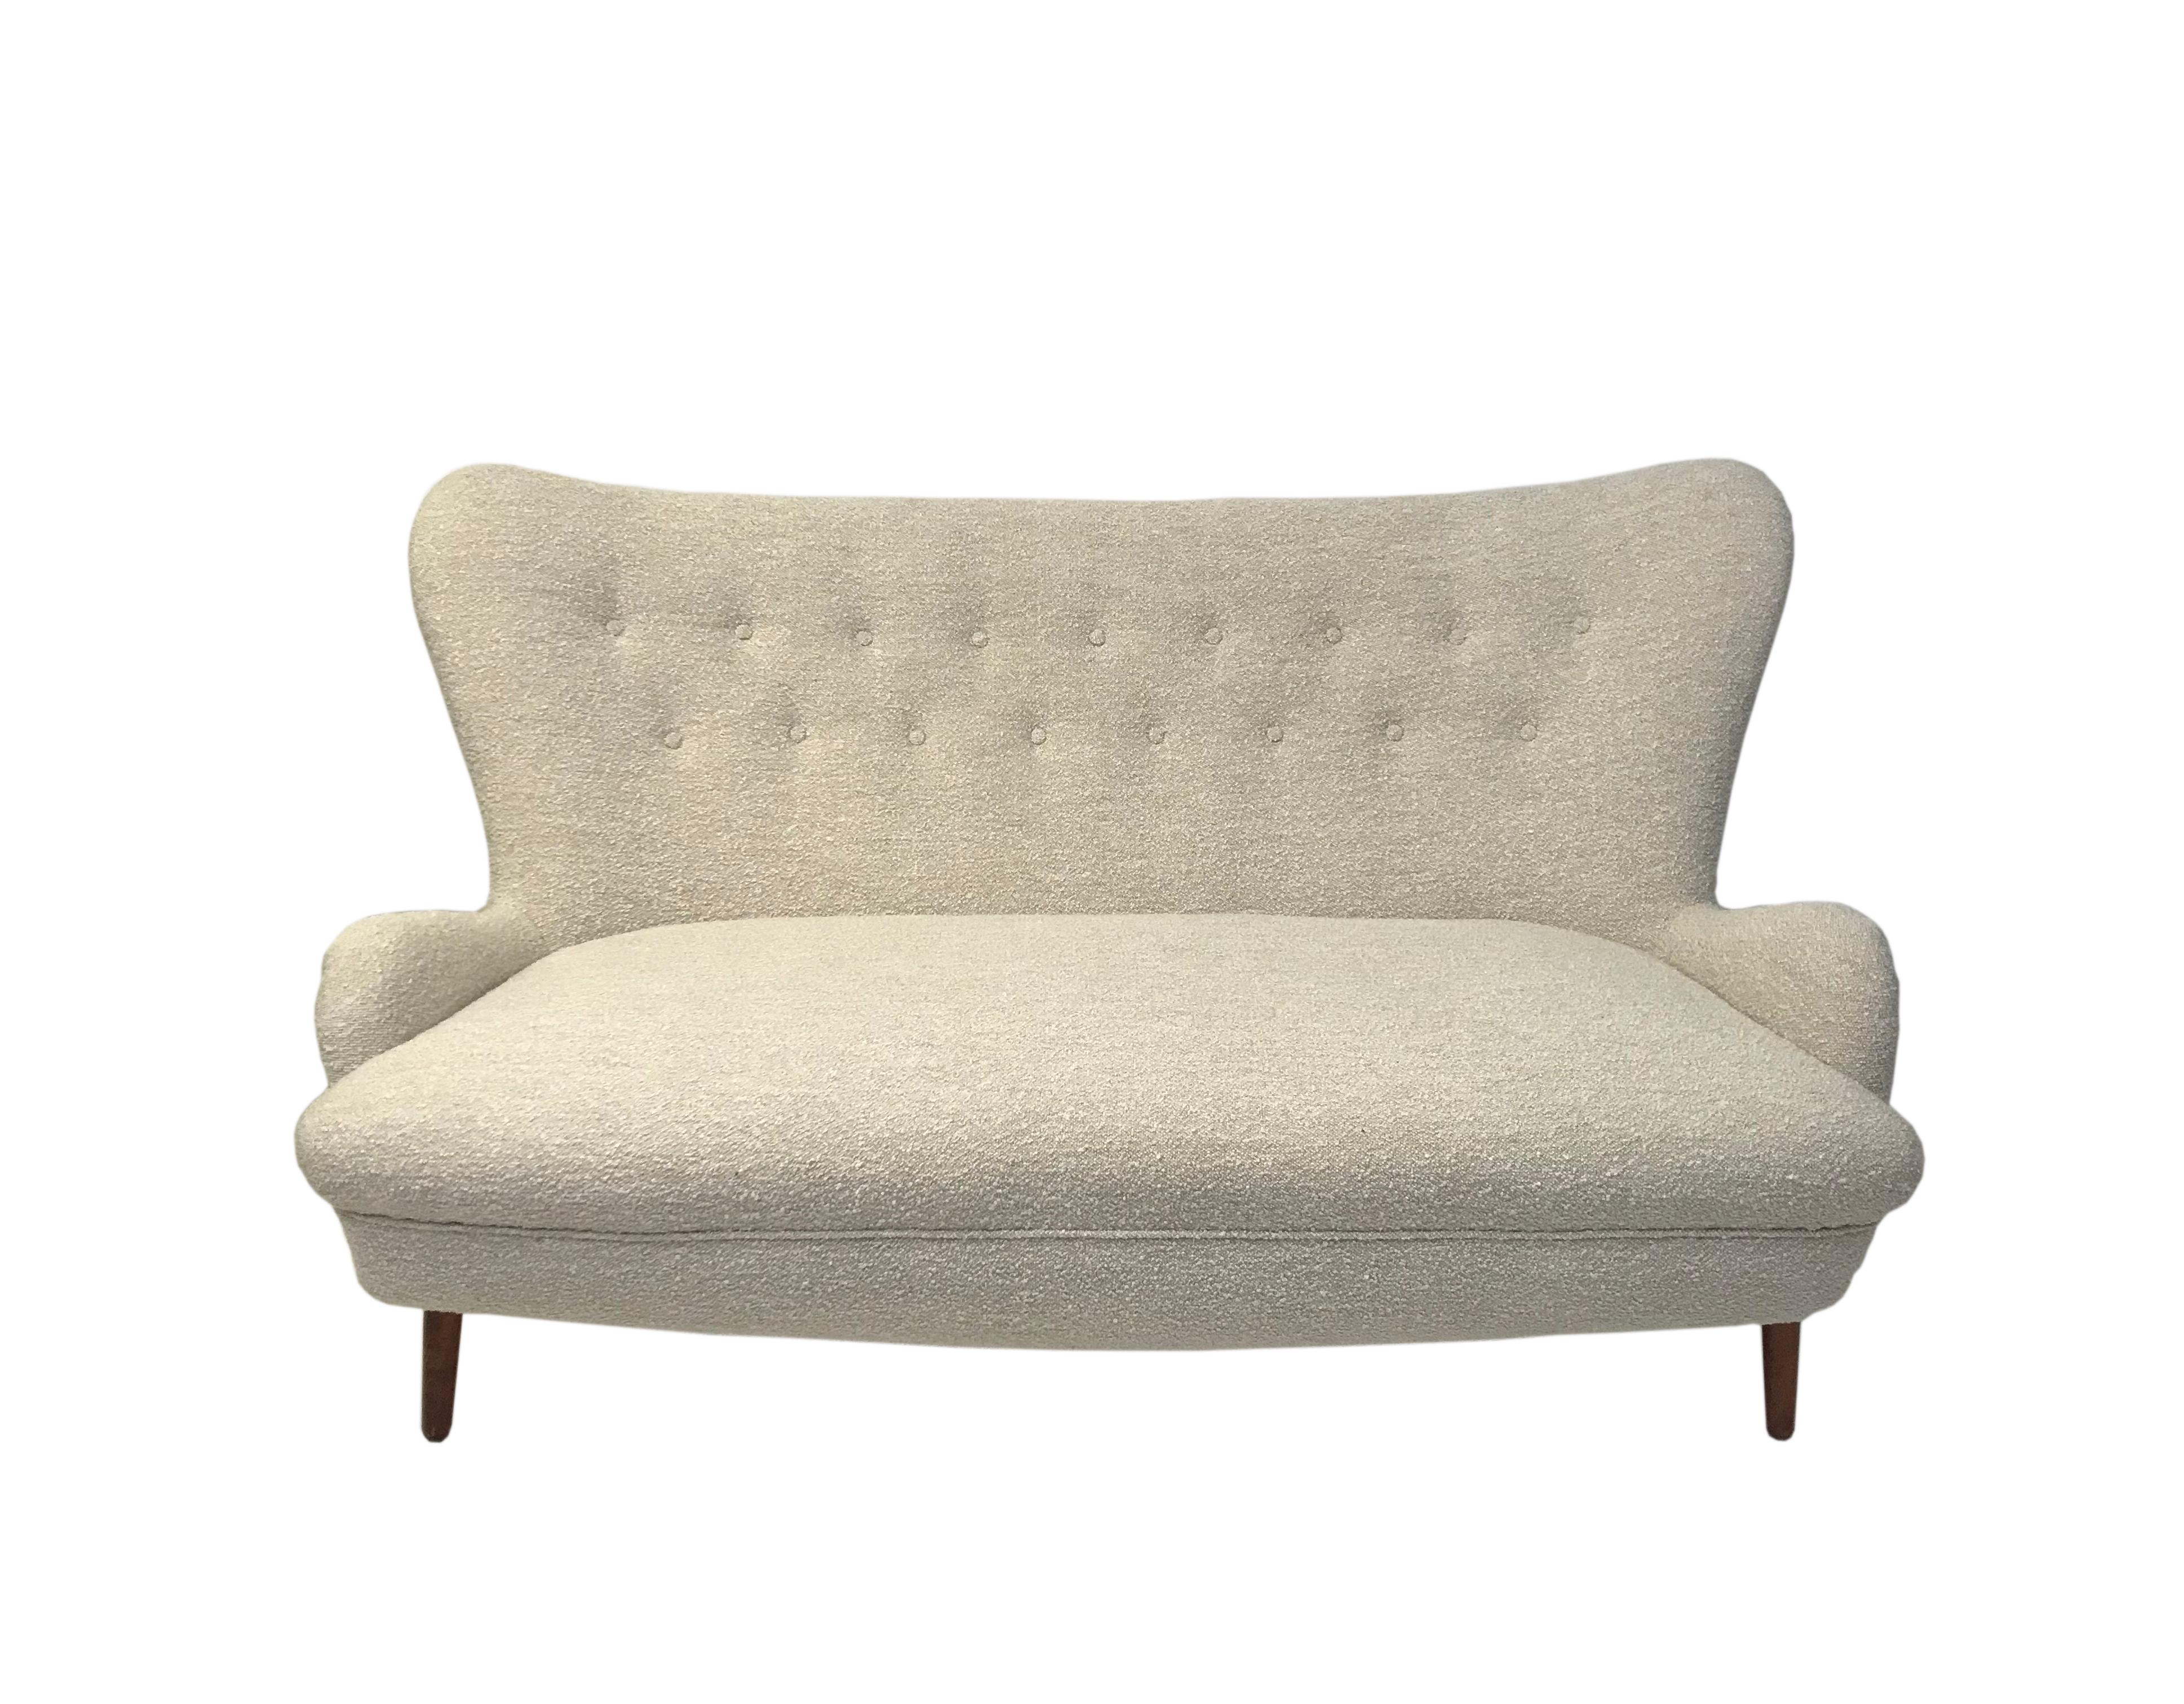 british sofa design